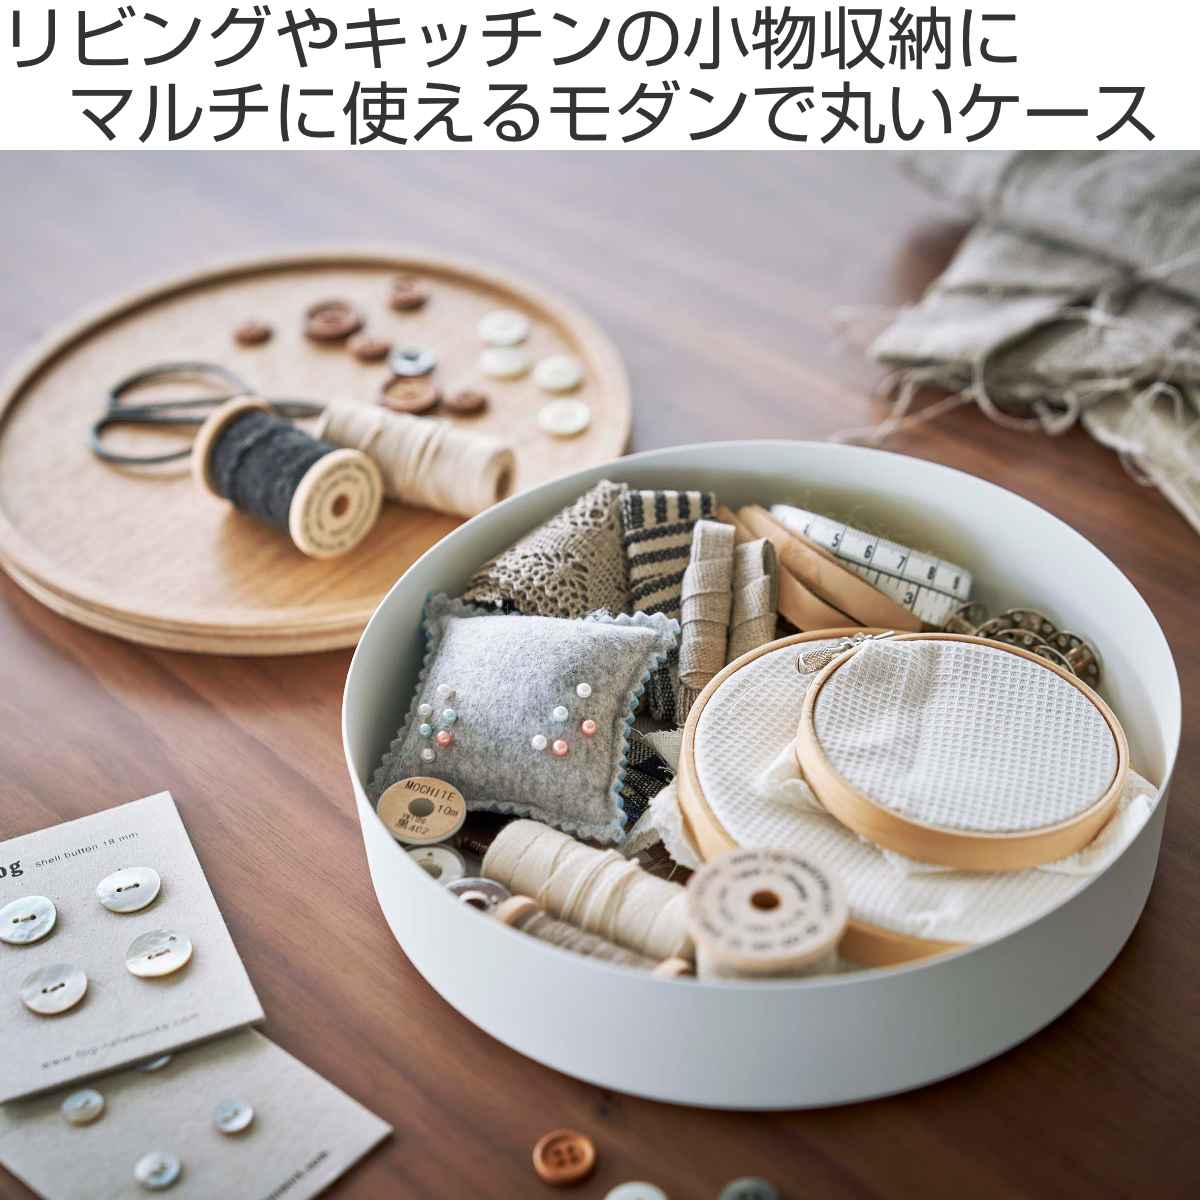 新入荷♡トリベット(４枚セット) チョークアート風 カフェ キッチン雑貨 通販